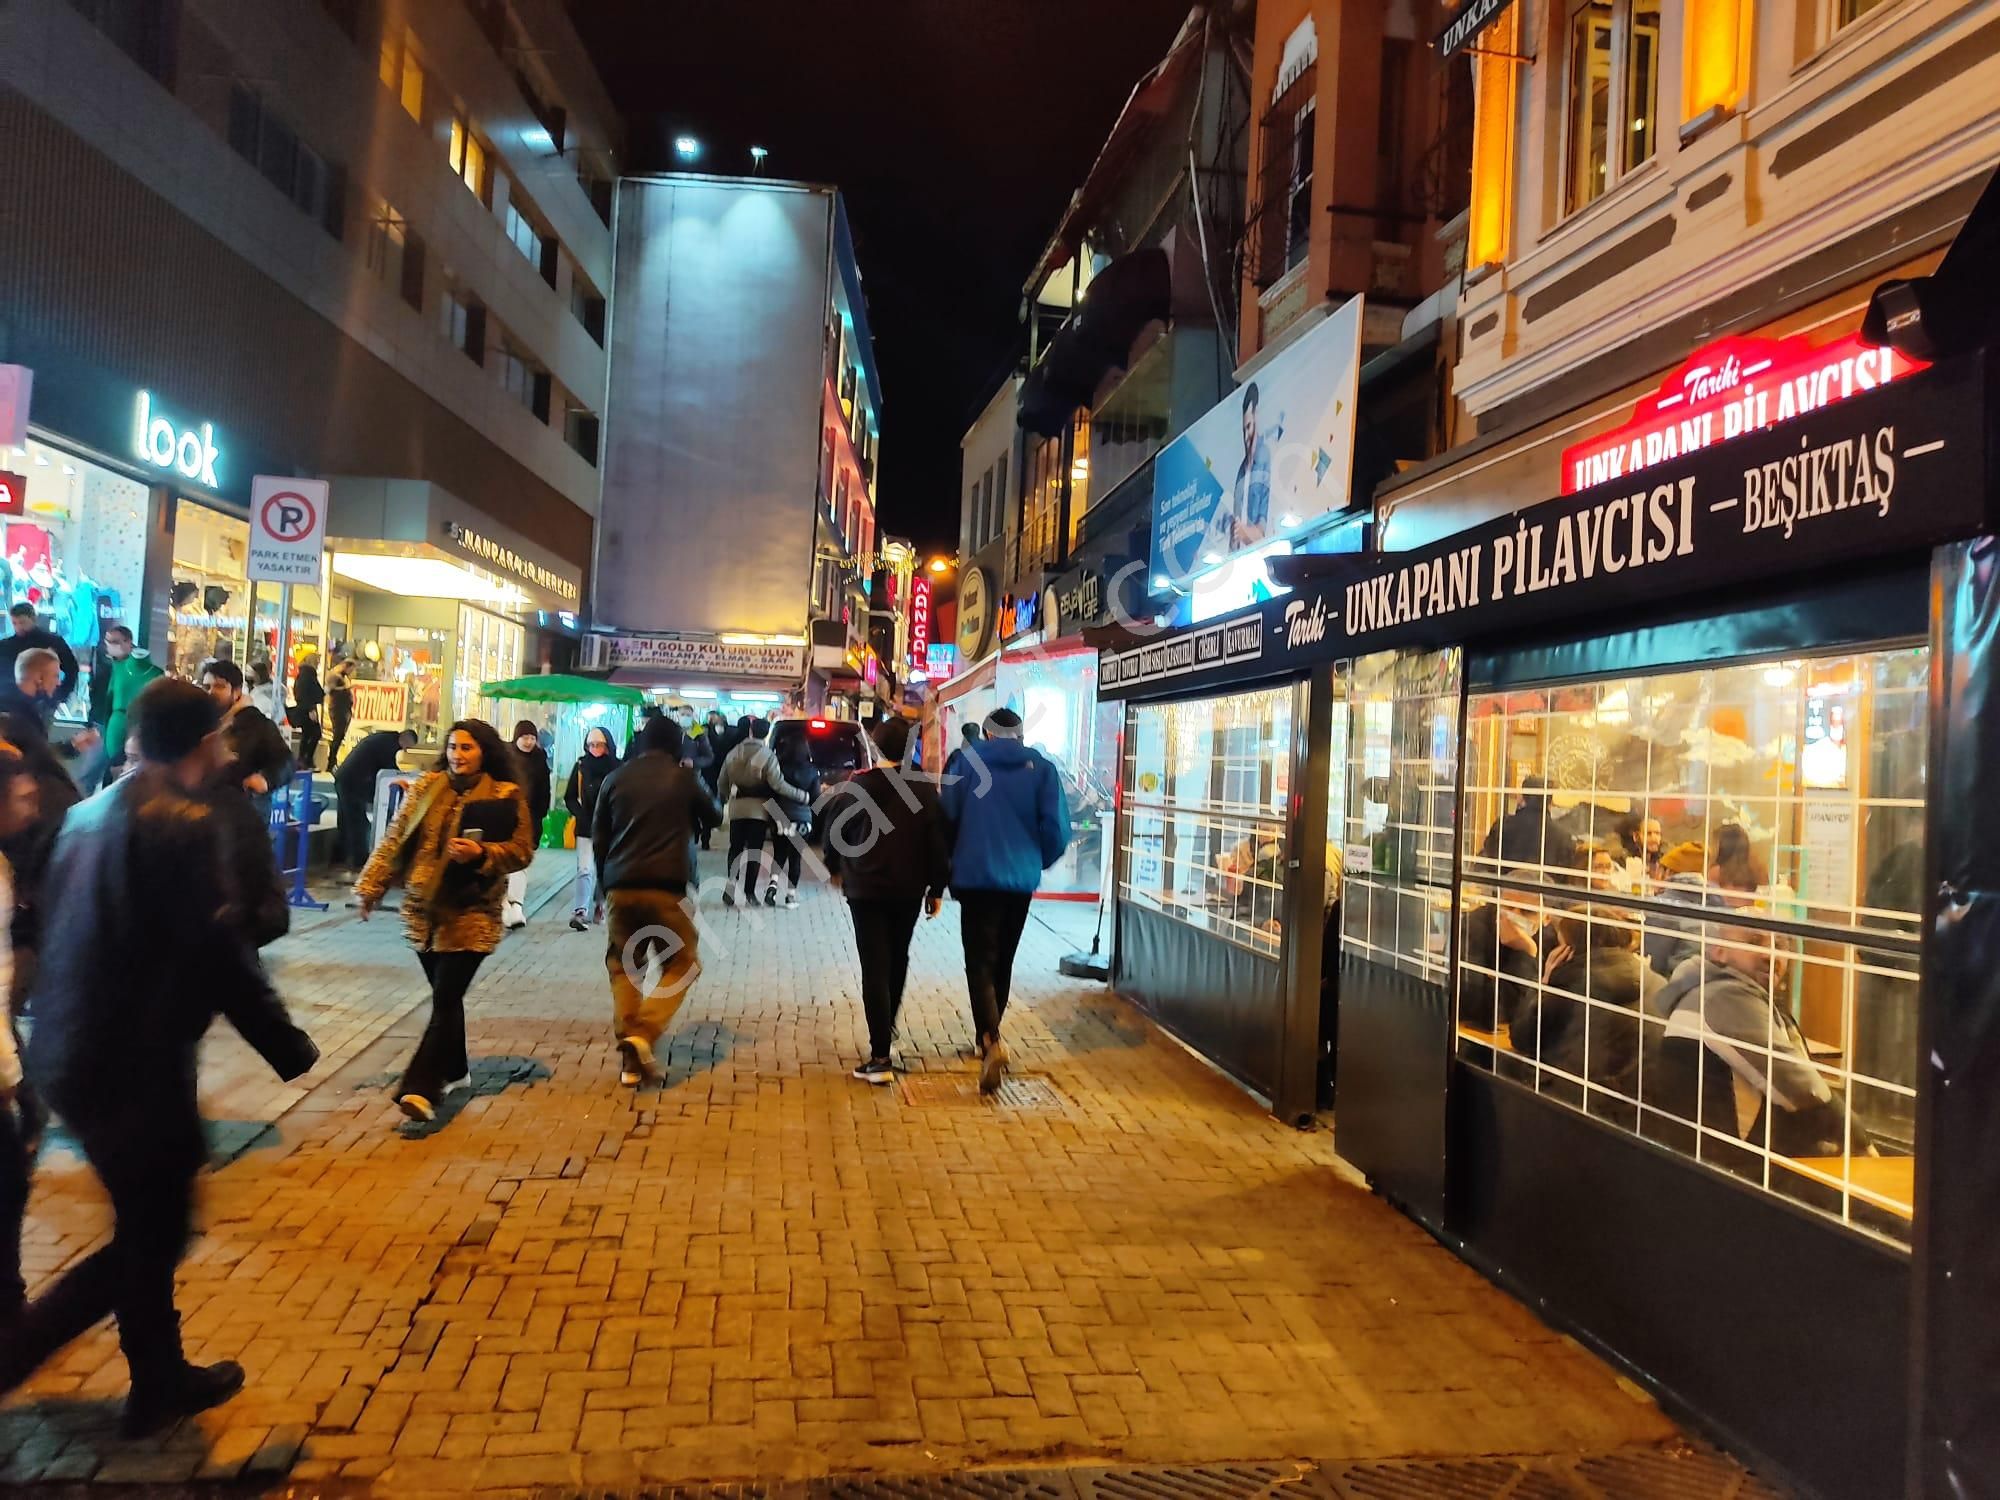 Beşiktaş Sinanpaşa Satılık Dükkan & Mağaza  Beşiktaş' da  650m2 den 16m2 ye Muhtelif m2 ' lerde  Binalar , Dükkanlar Ofisler Satılık